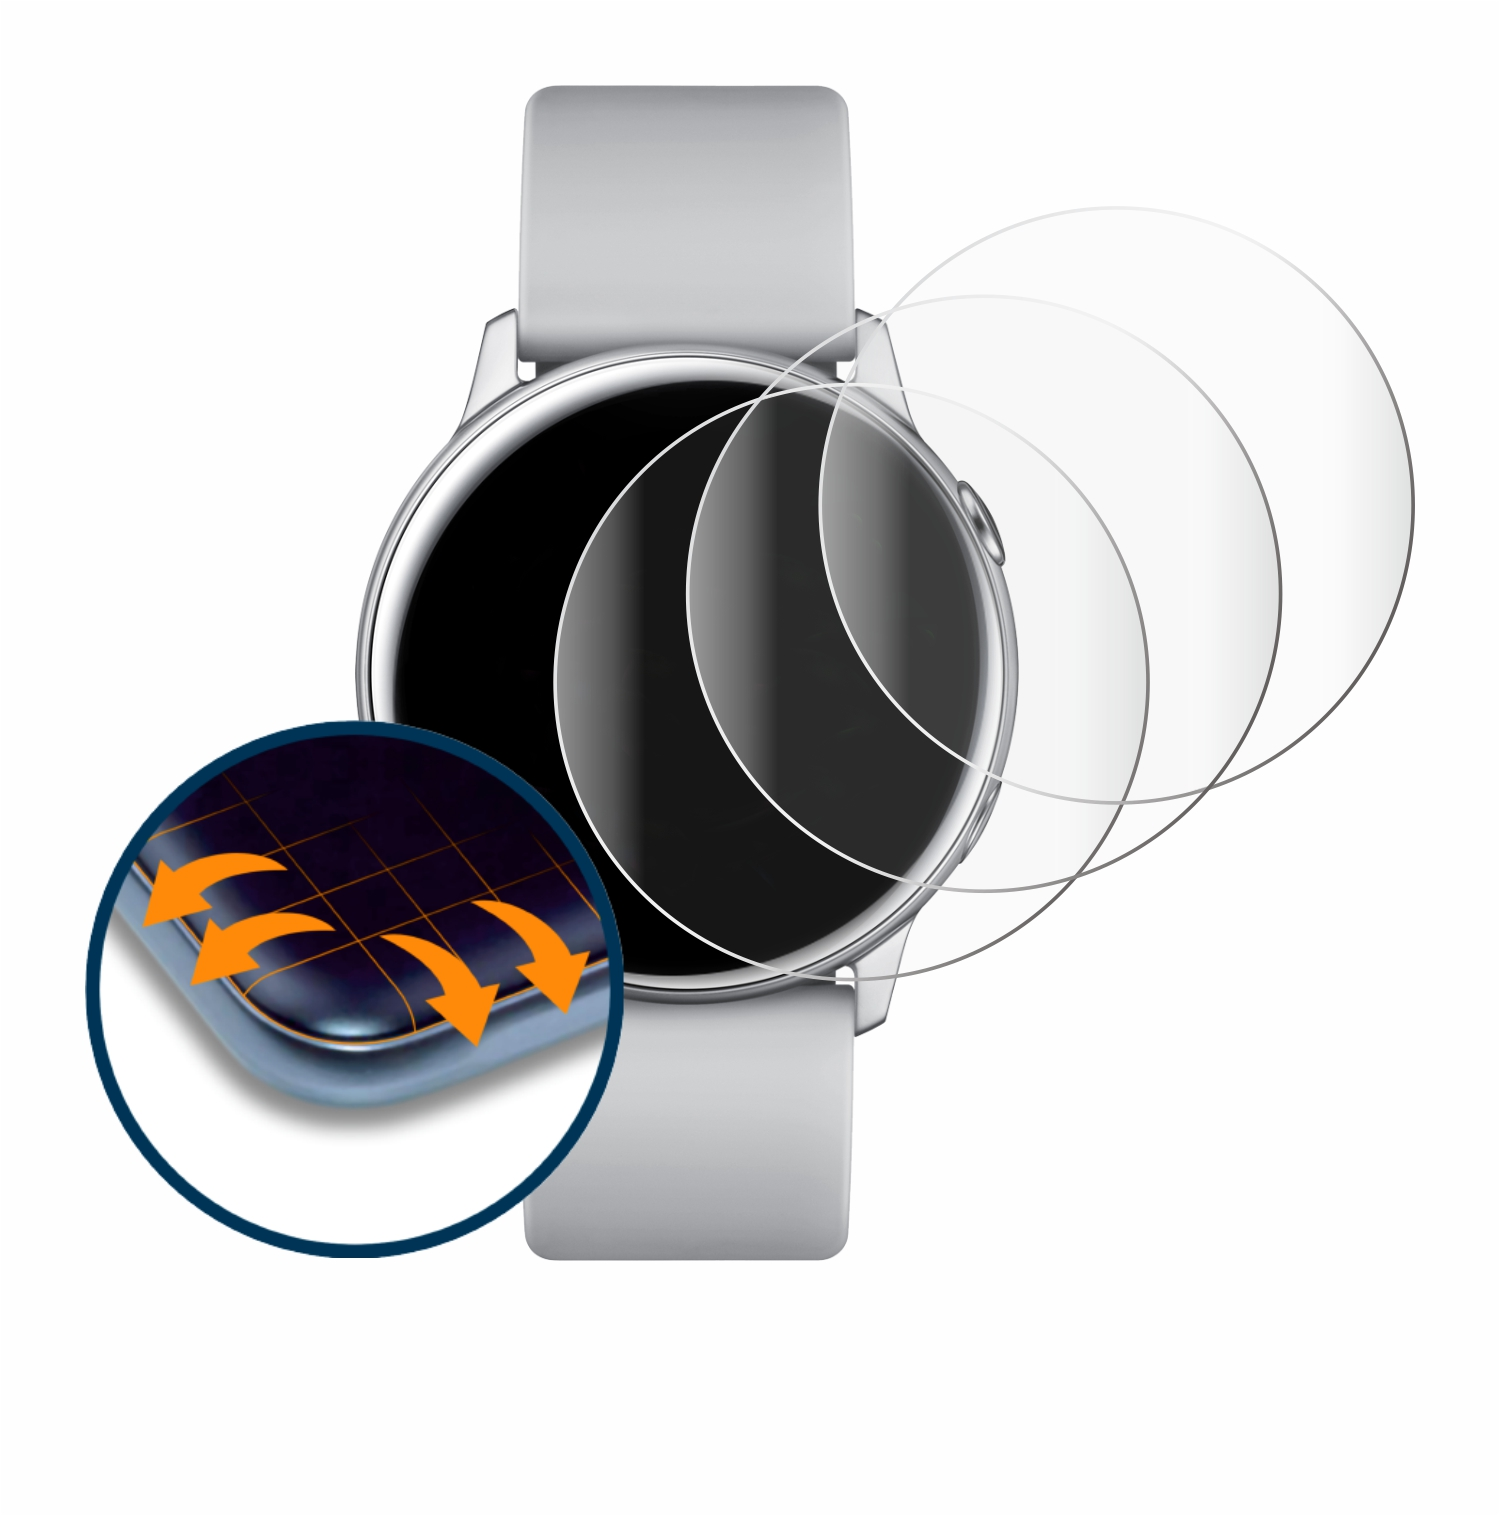 SAVVIES 4x Flex Full-Cover 3D Curved Galaxy Active) Watch Schutzfolie(für Samsung